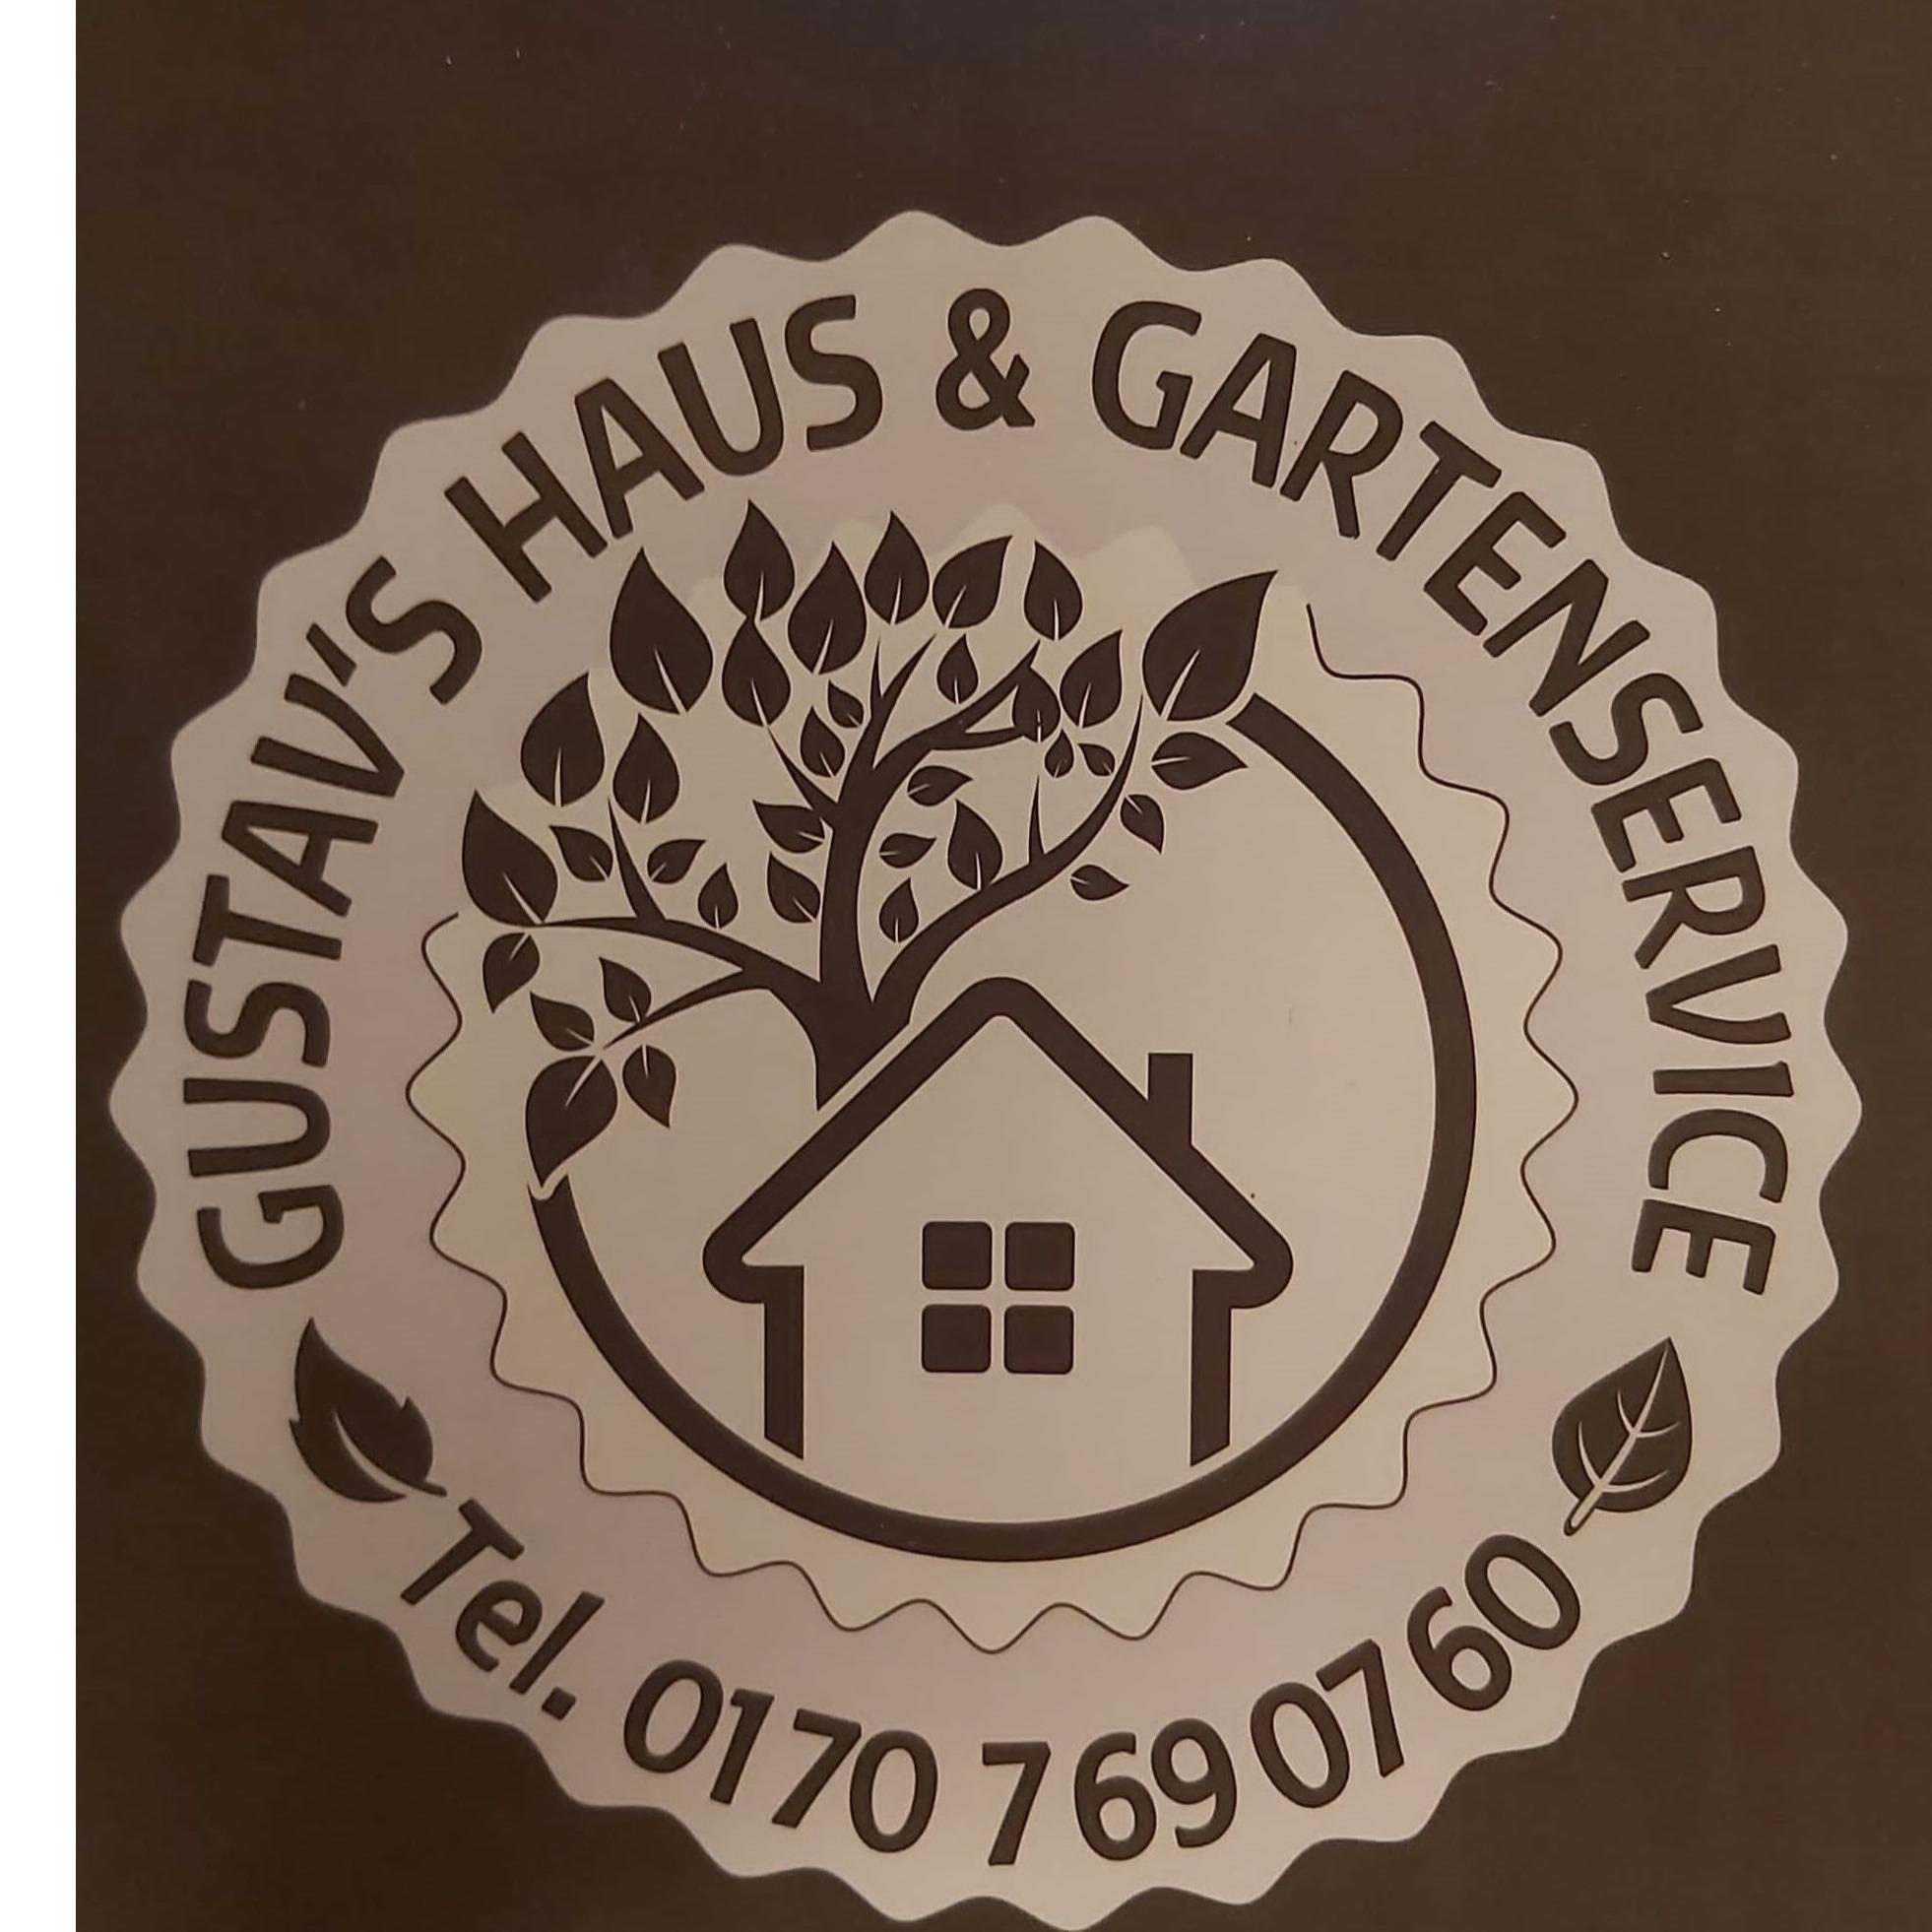 Gustav's Haus-Gartenservice in Ballenstedt - Logo